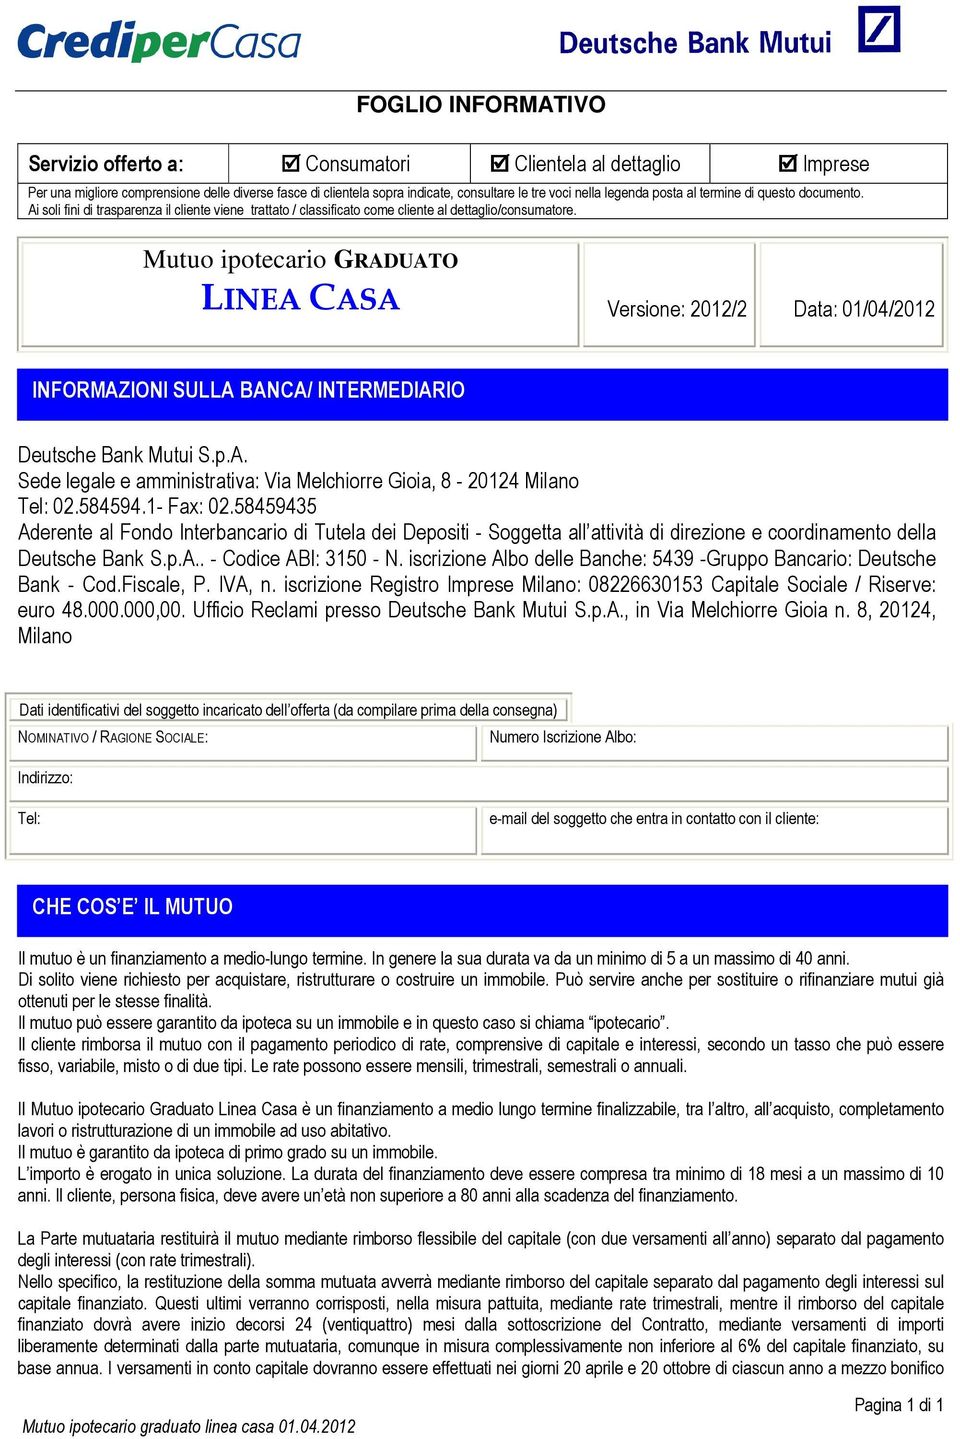 Mutuo ipotecario GRADUATO LINEA CASA Versione: 2012/2 Data: 01/04/2012 INFORMAZIONI SULLA BANCA/ INTERMEDIARIO Deutsche Bank Mutui S.p.A. Sede legale e amministrativa: Via Melchiorre Gioia, 8-20124 Milano Tel: 02.